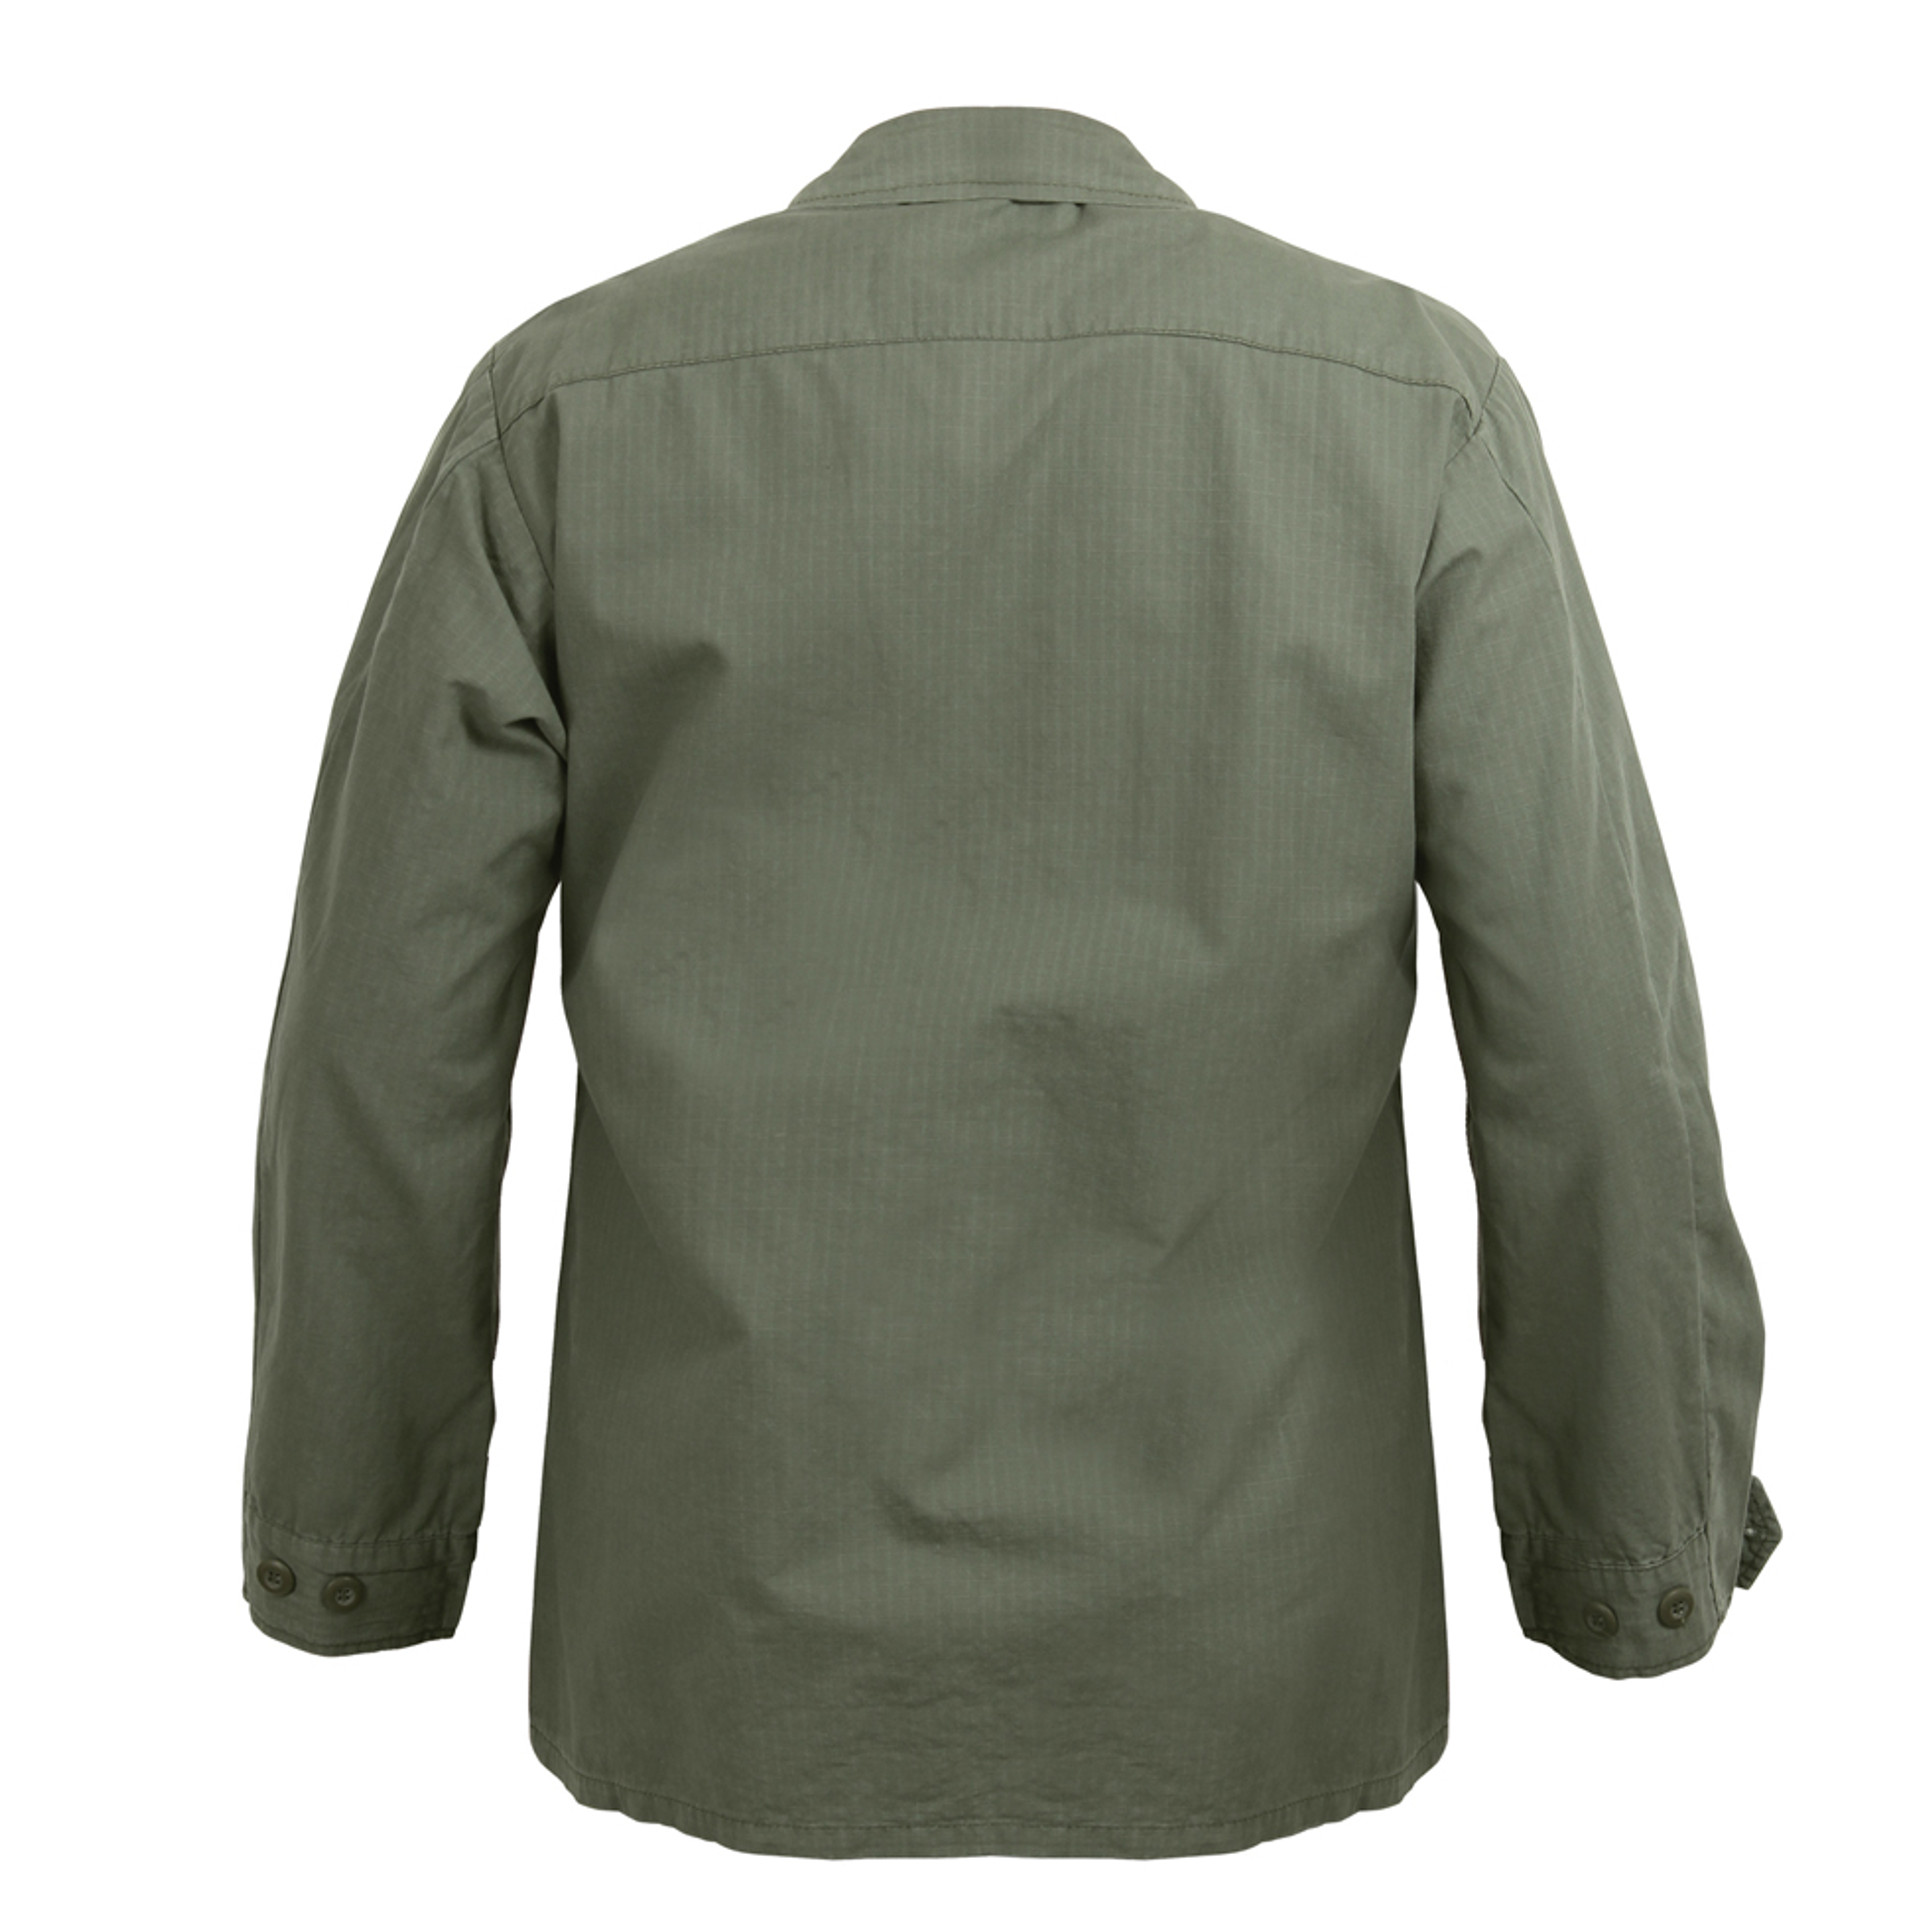 Shop Vintage Vietnam Era Jungle Jackets - Fatigues Army Navy Gear